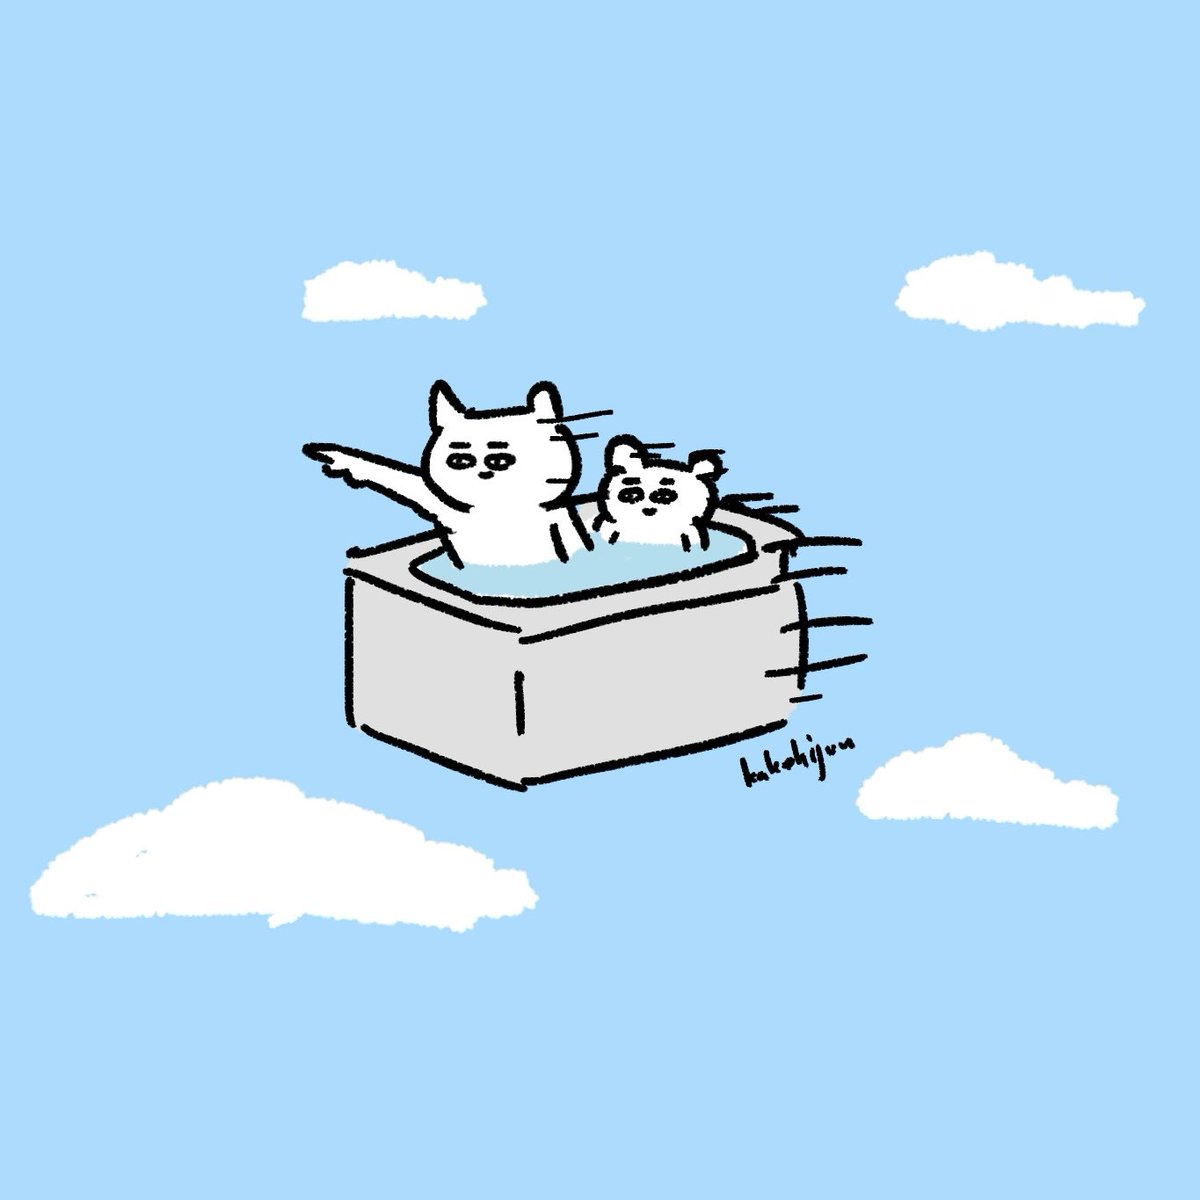 「そろそろ風呂だ!」|カケヒジュン@イラストレーターのイラスト